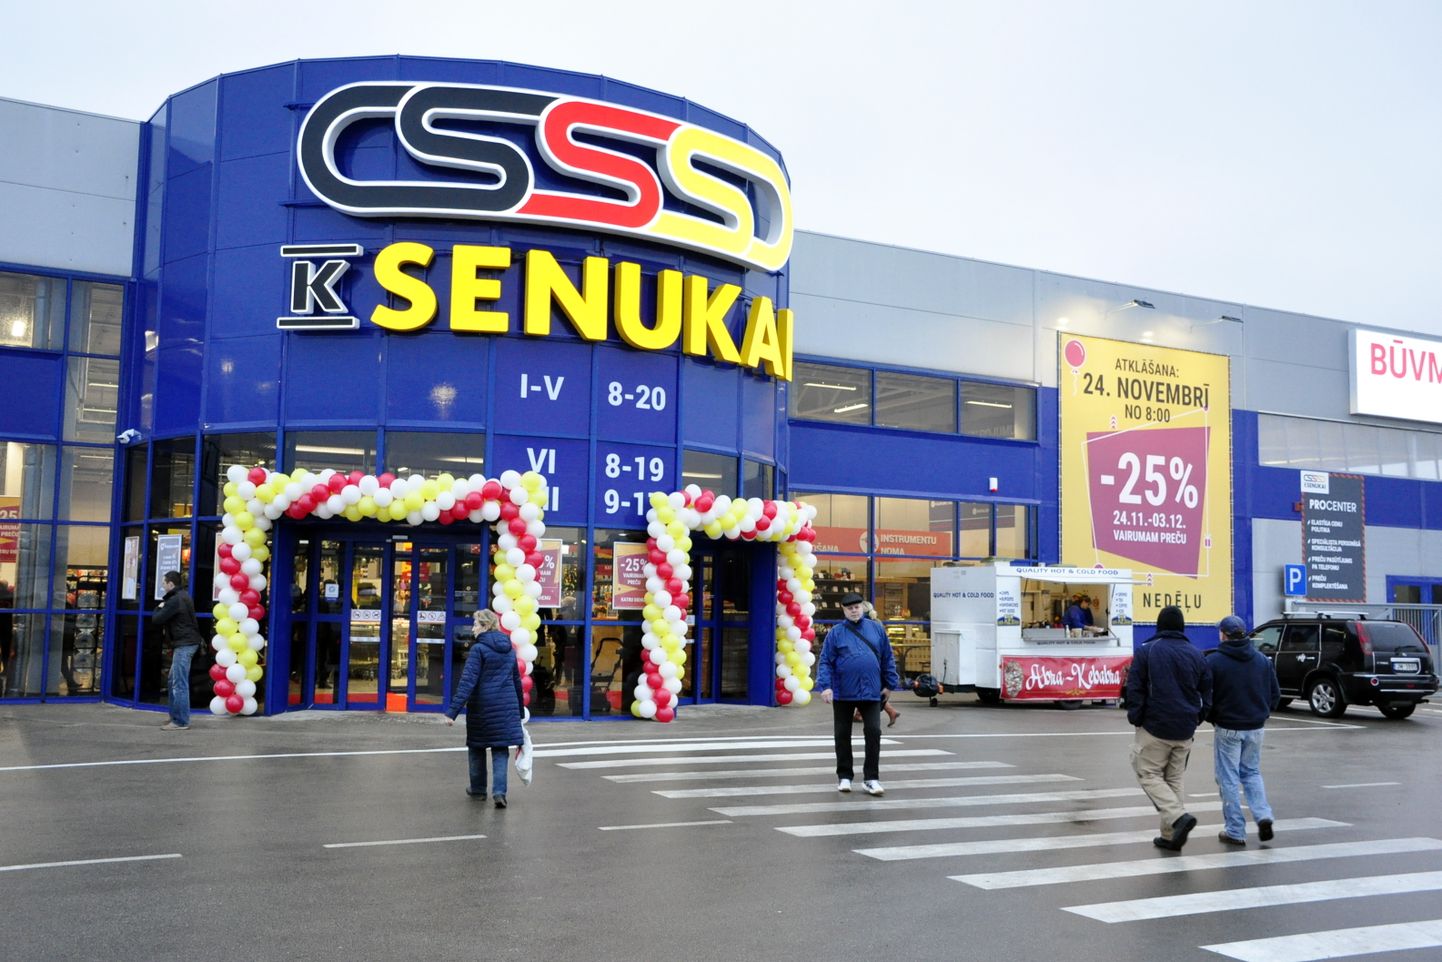 Магазин "Kesko Senukai". Иллюстративное фото.